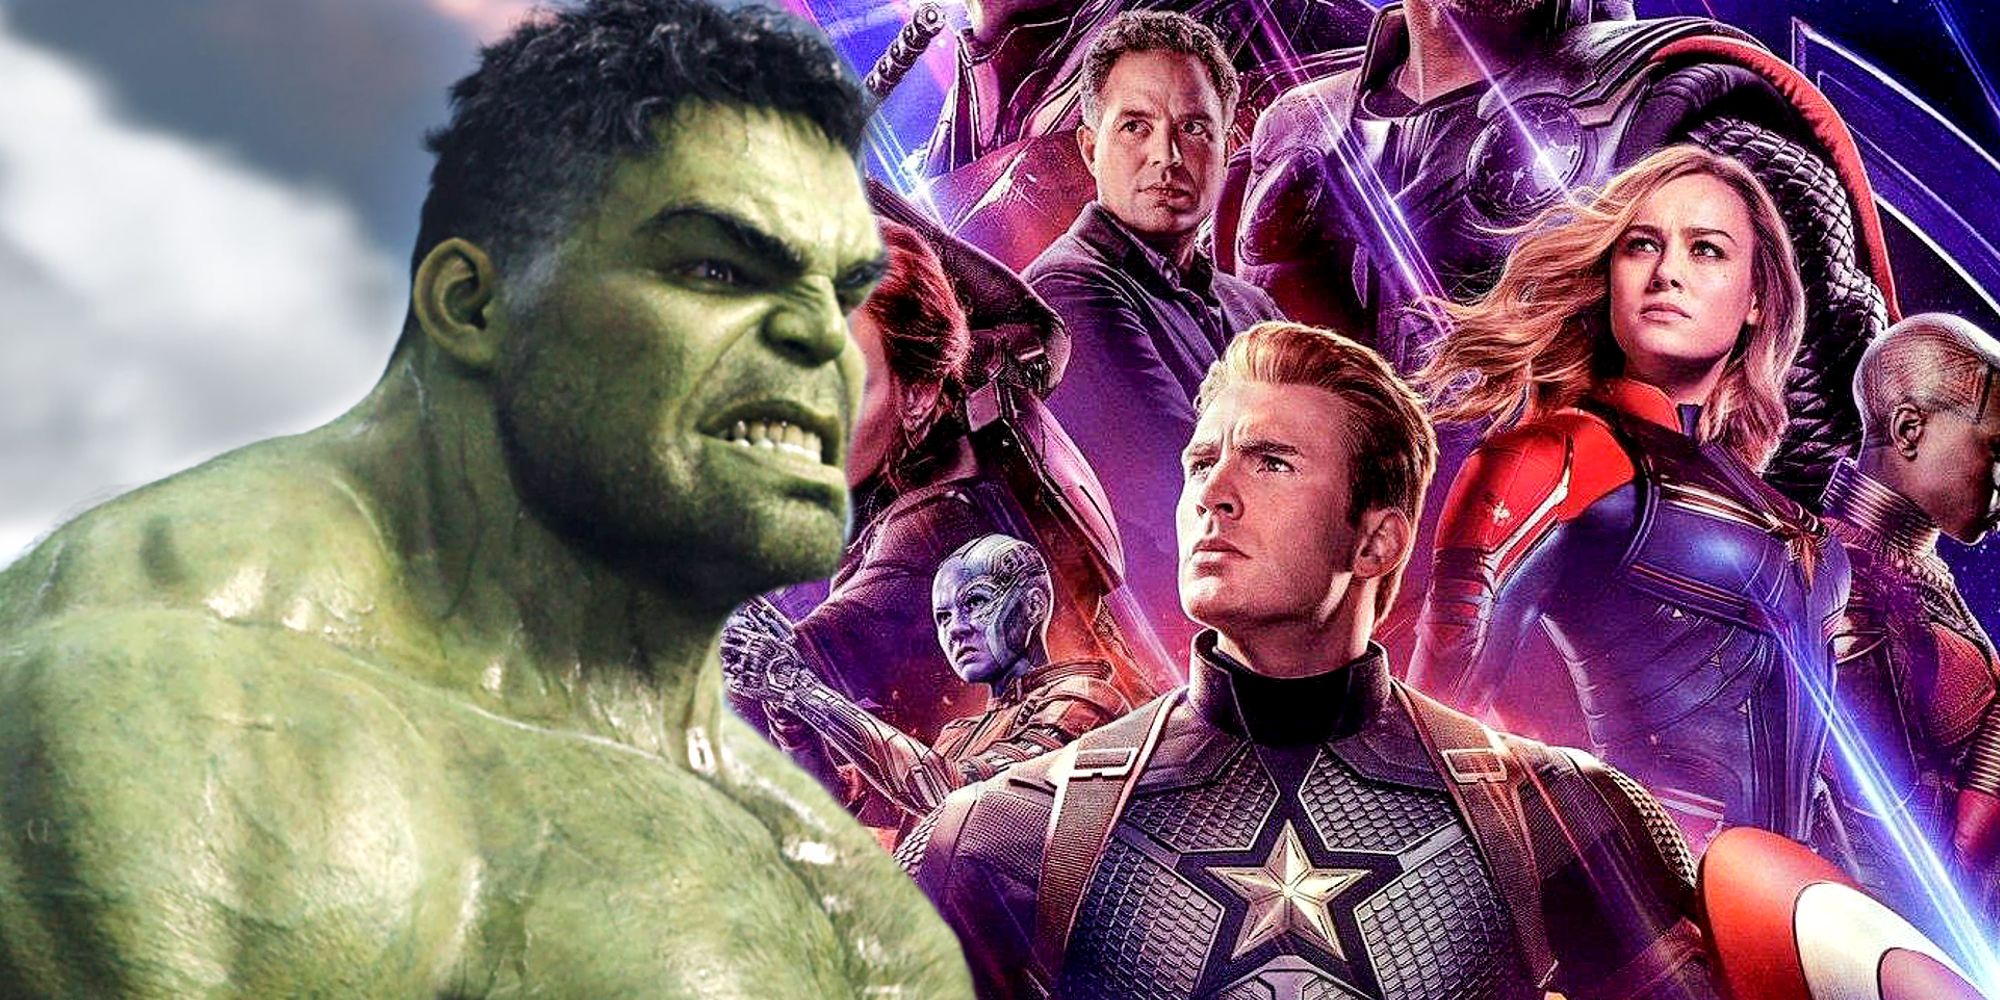 Hulk in Thor Ragnarok and Avengers Endgame